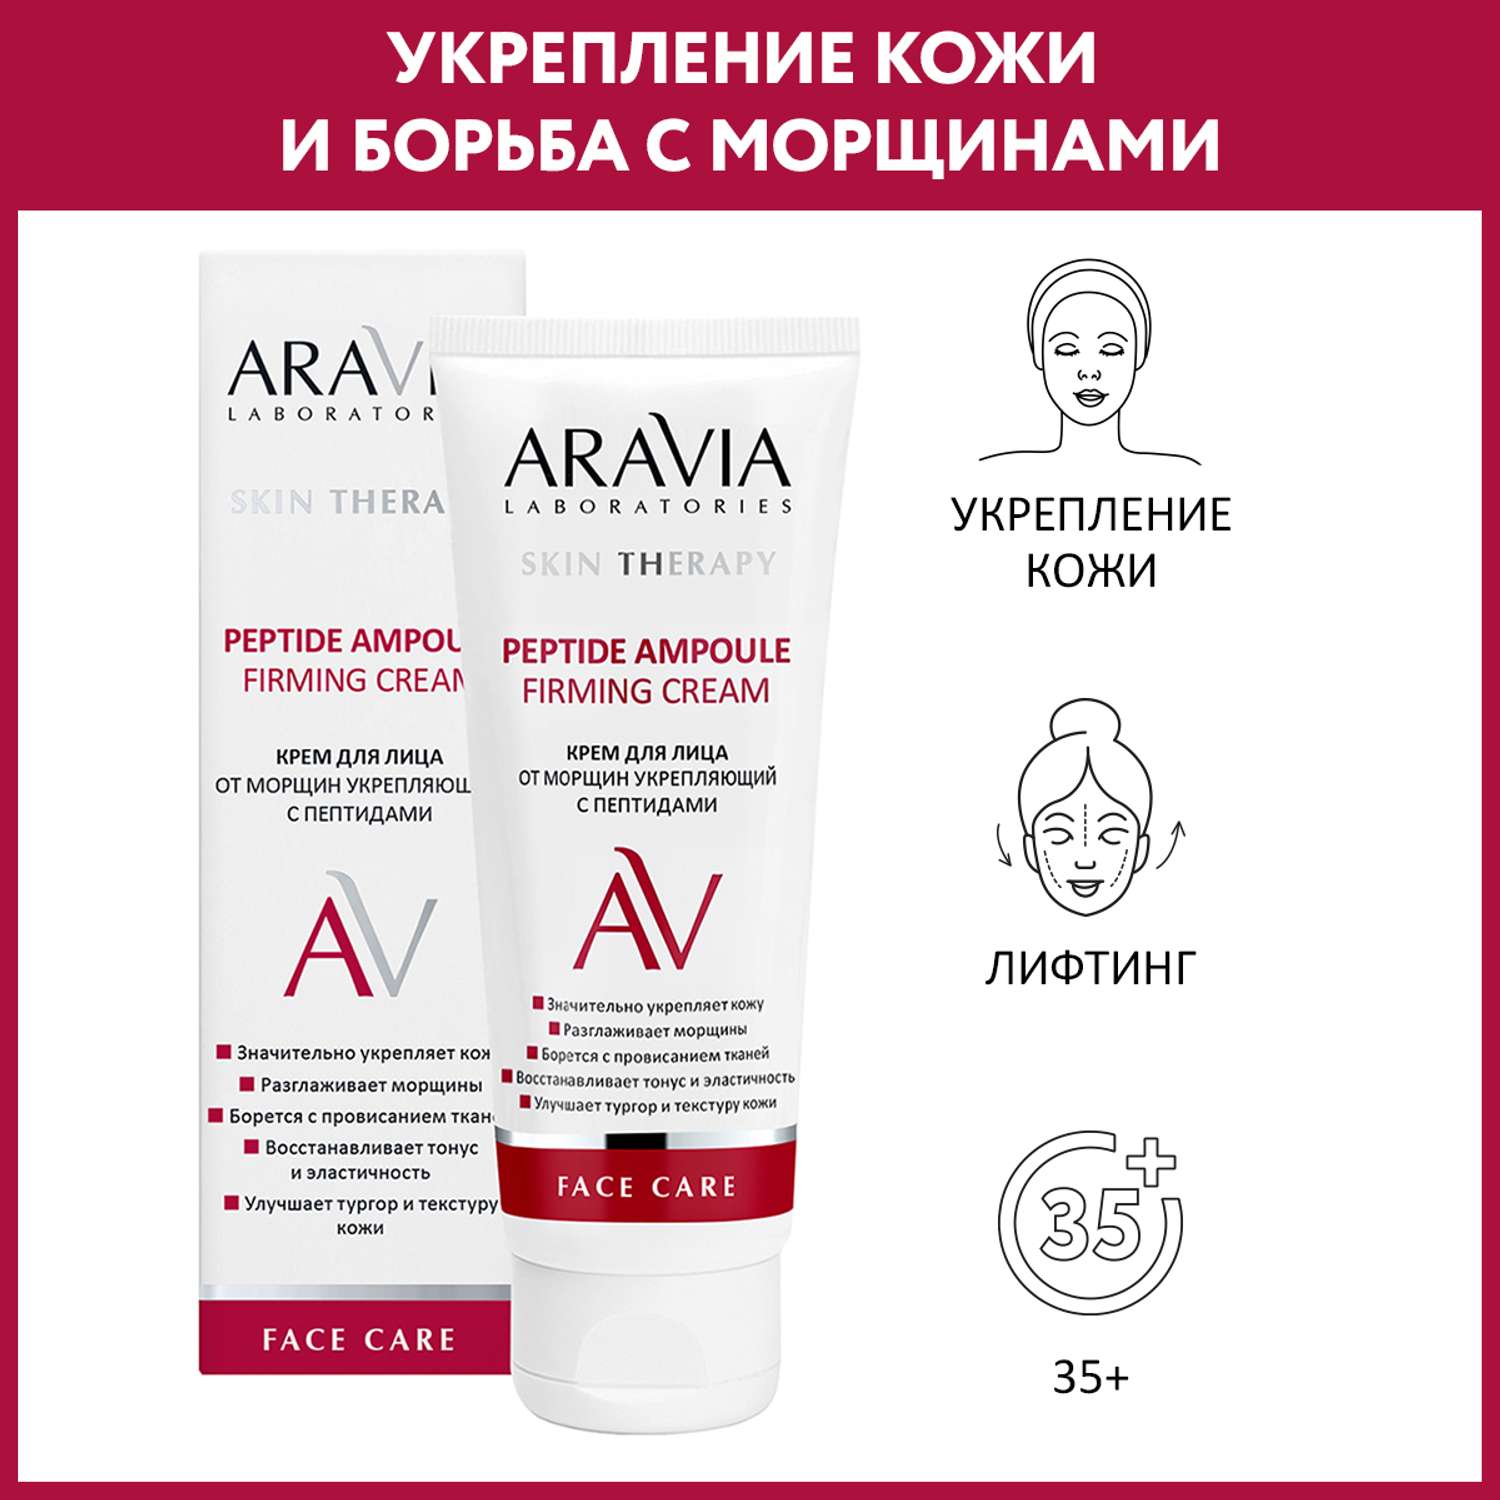 Крем для лица ARAVIA Laboratories от морщин с пептидами Peptide Ampoule Firming Cream 50 мл - фото 1